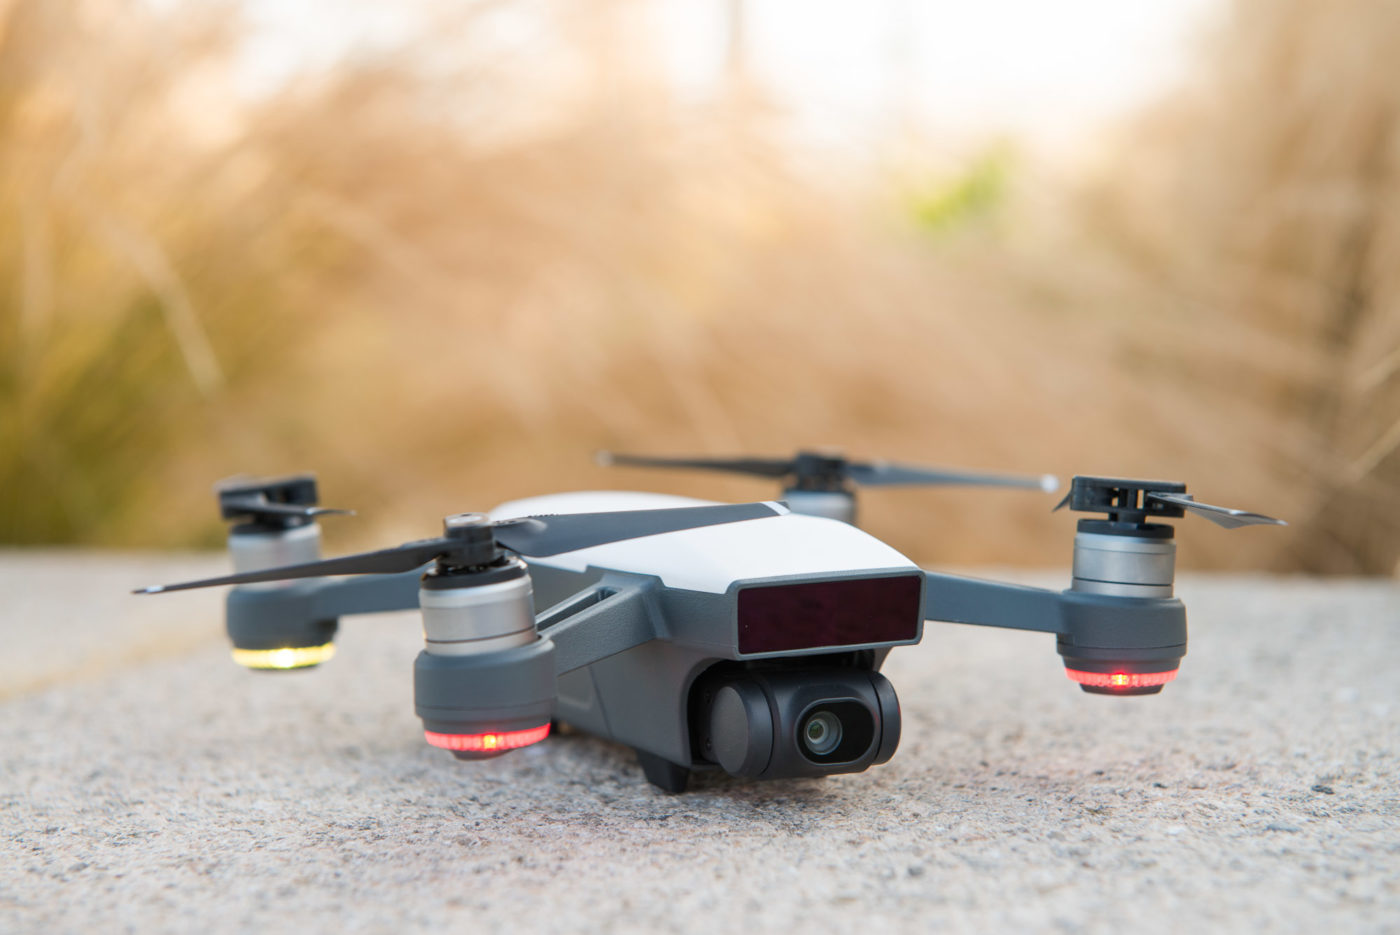 Drone avec caméra 4K - Capteur Sony - Autonomie 31 Minutes - GPS WiFi  5.8GHz - Longue portée 